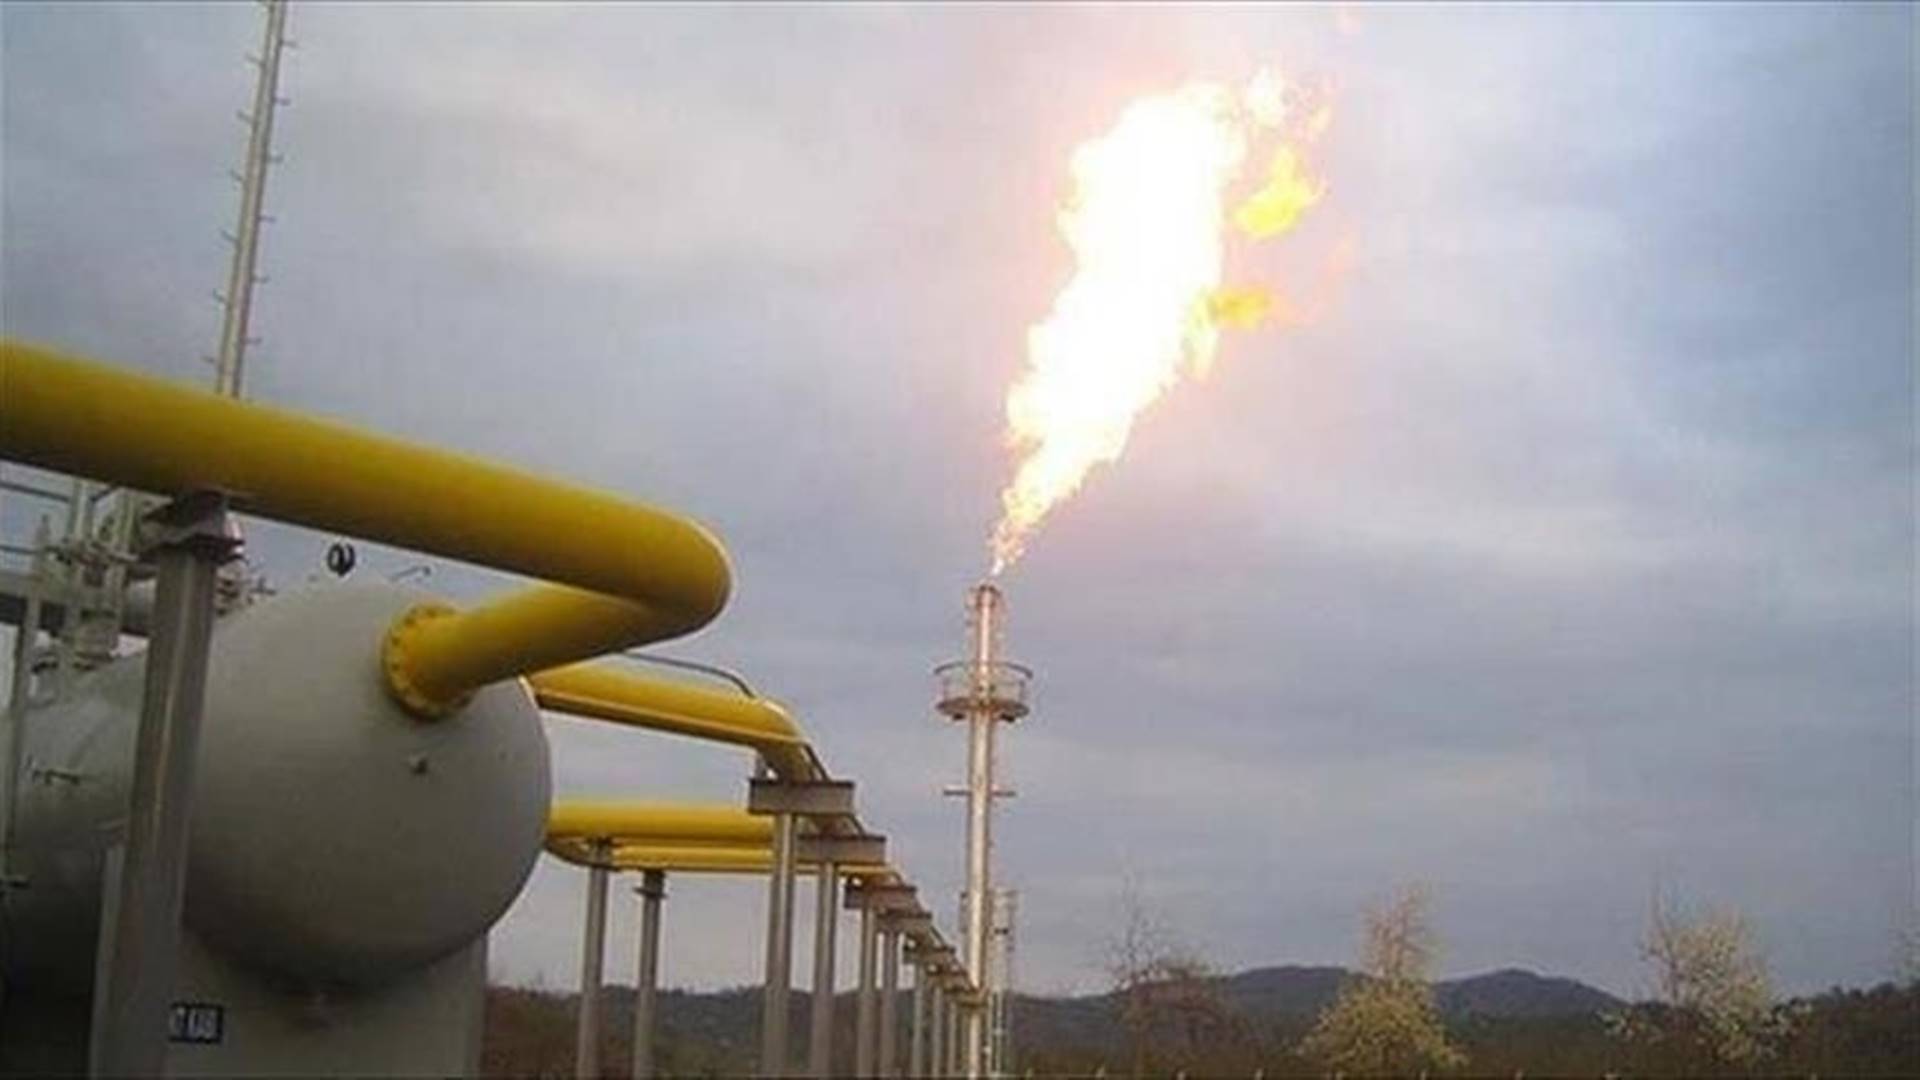 EU oil ban, price cap estimated to cost Russia €160 million per day: Study